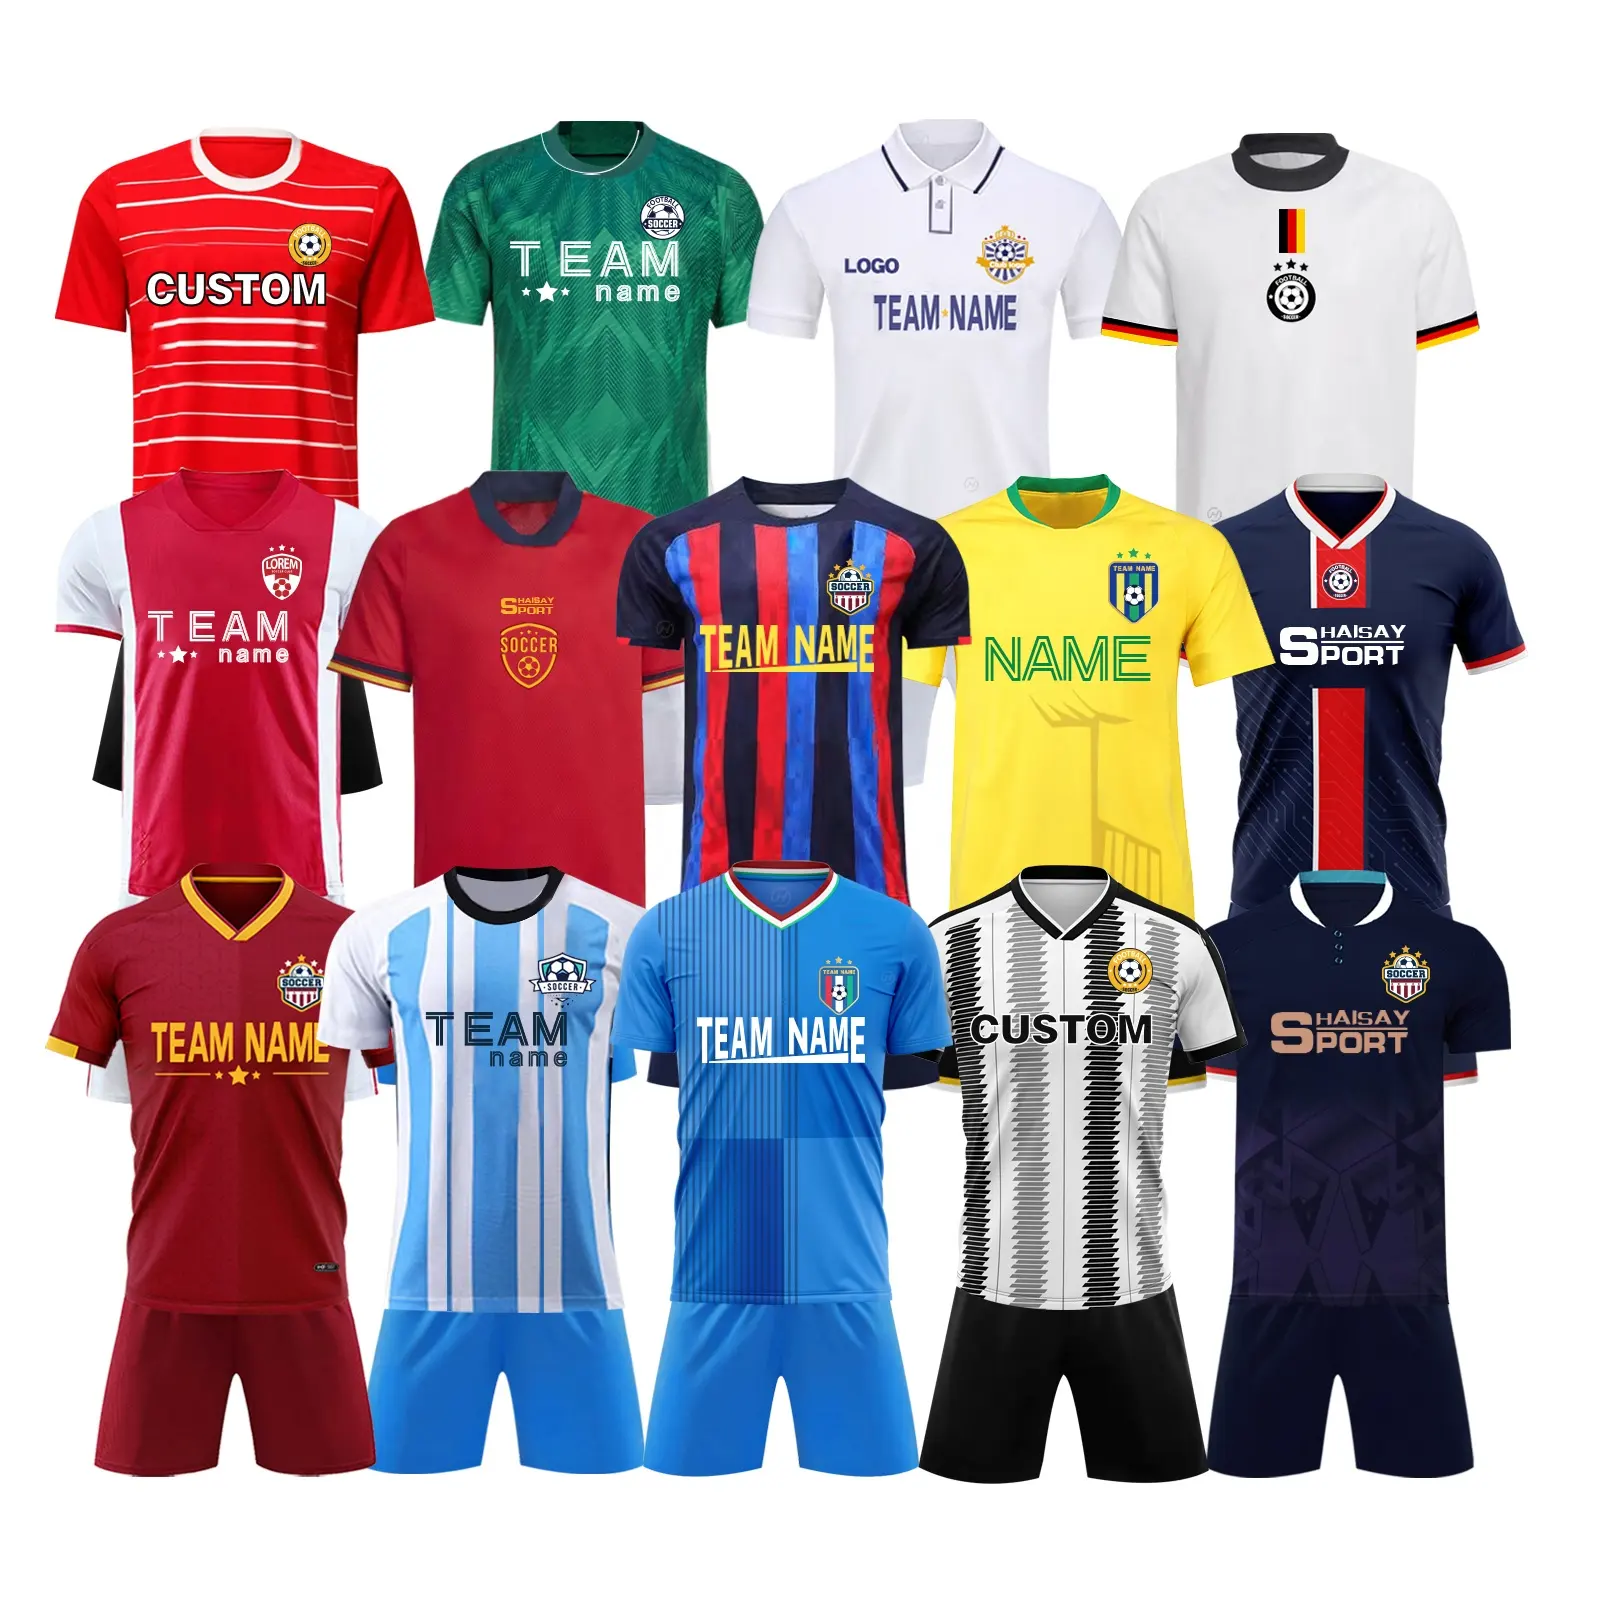 2022 dünya kupası futbol forması hızlı kuru Polyester spor erkek futbol kıyafetleri Set üniformaları özel futbol futbol formaları